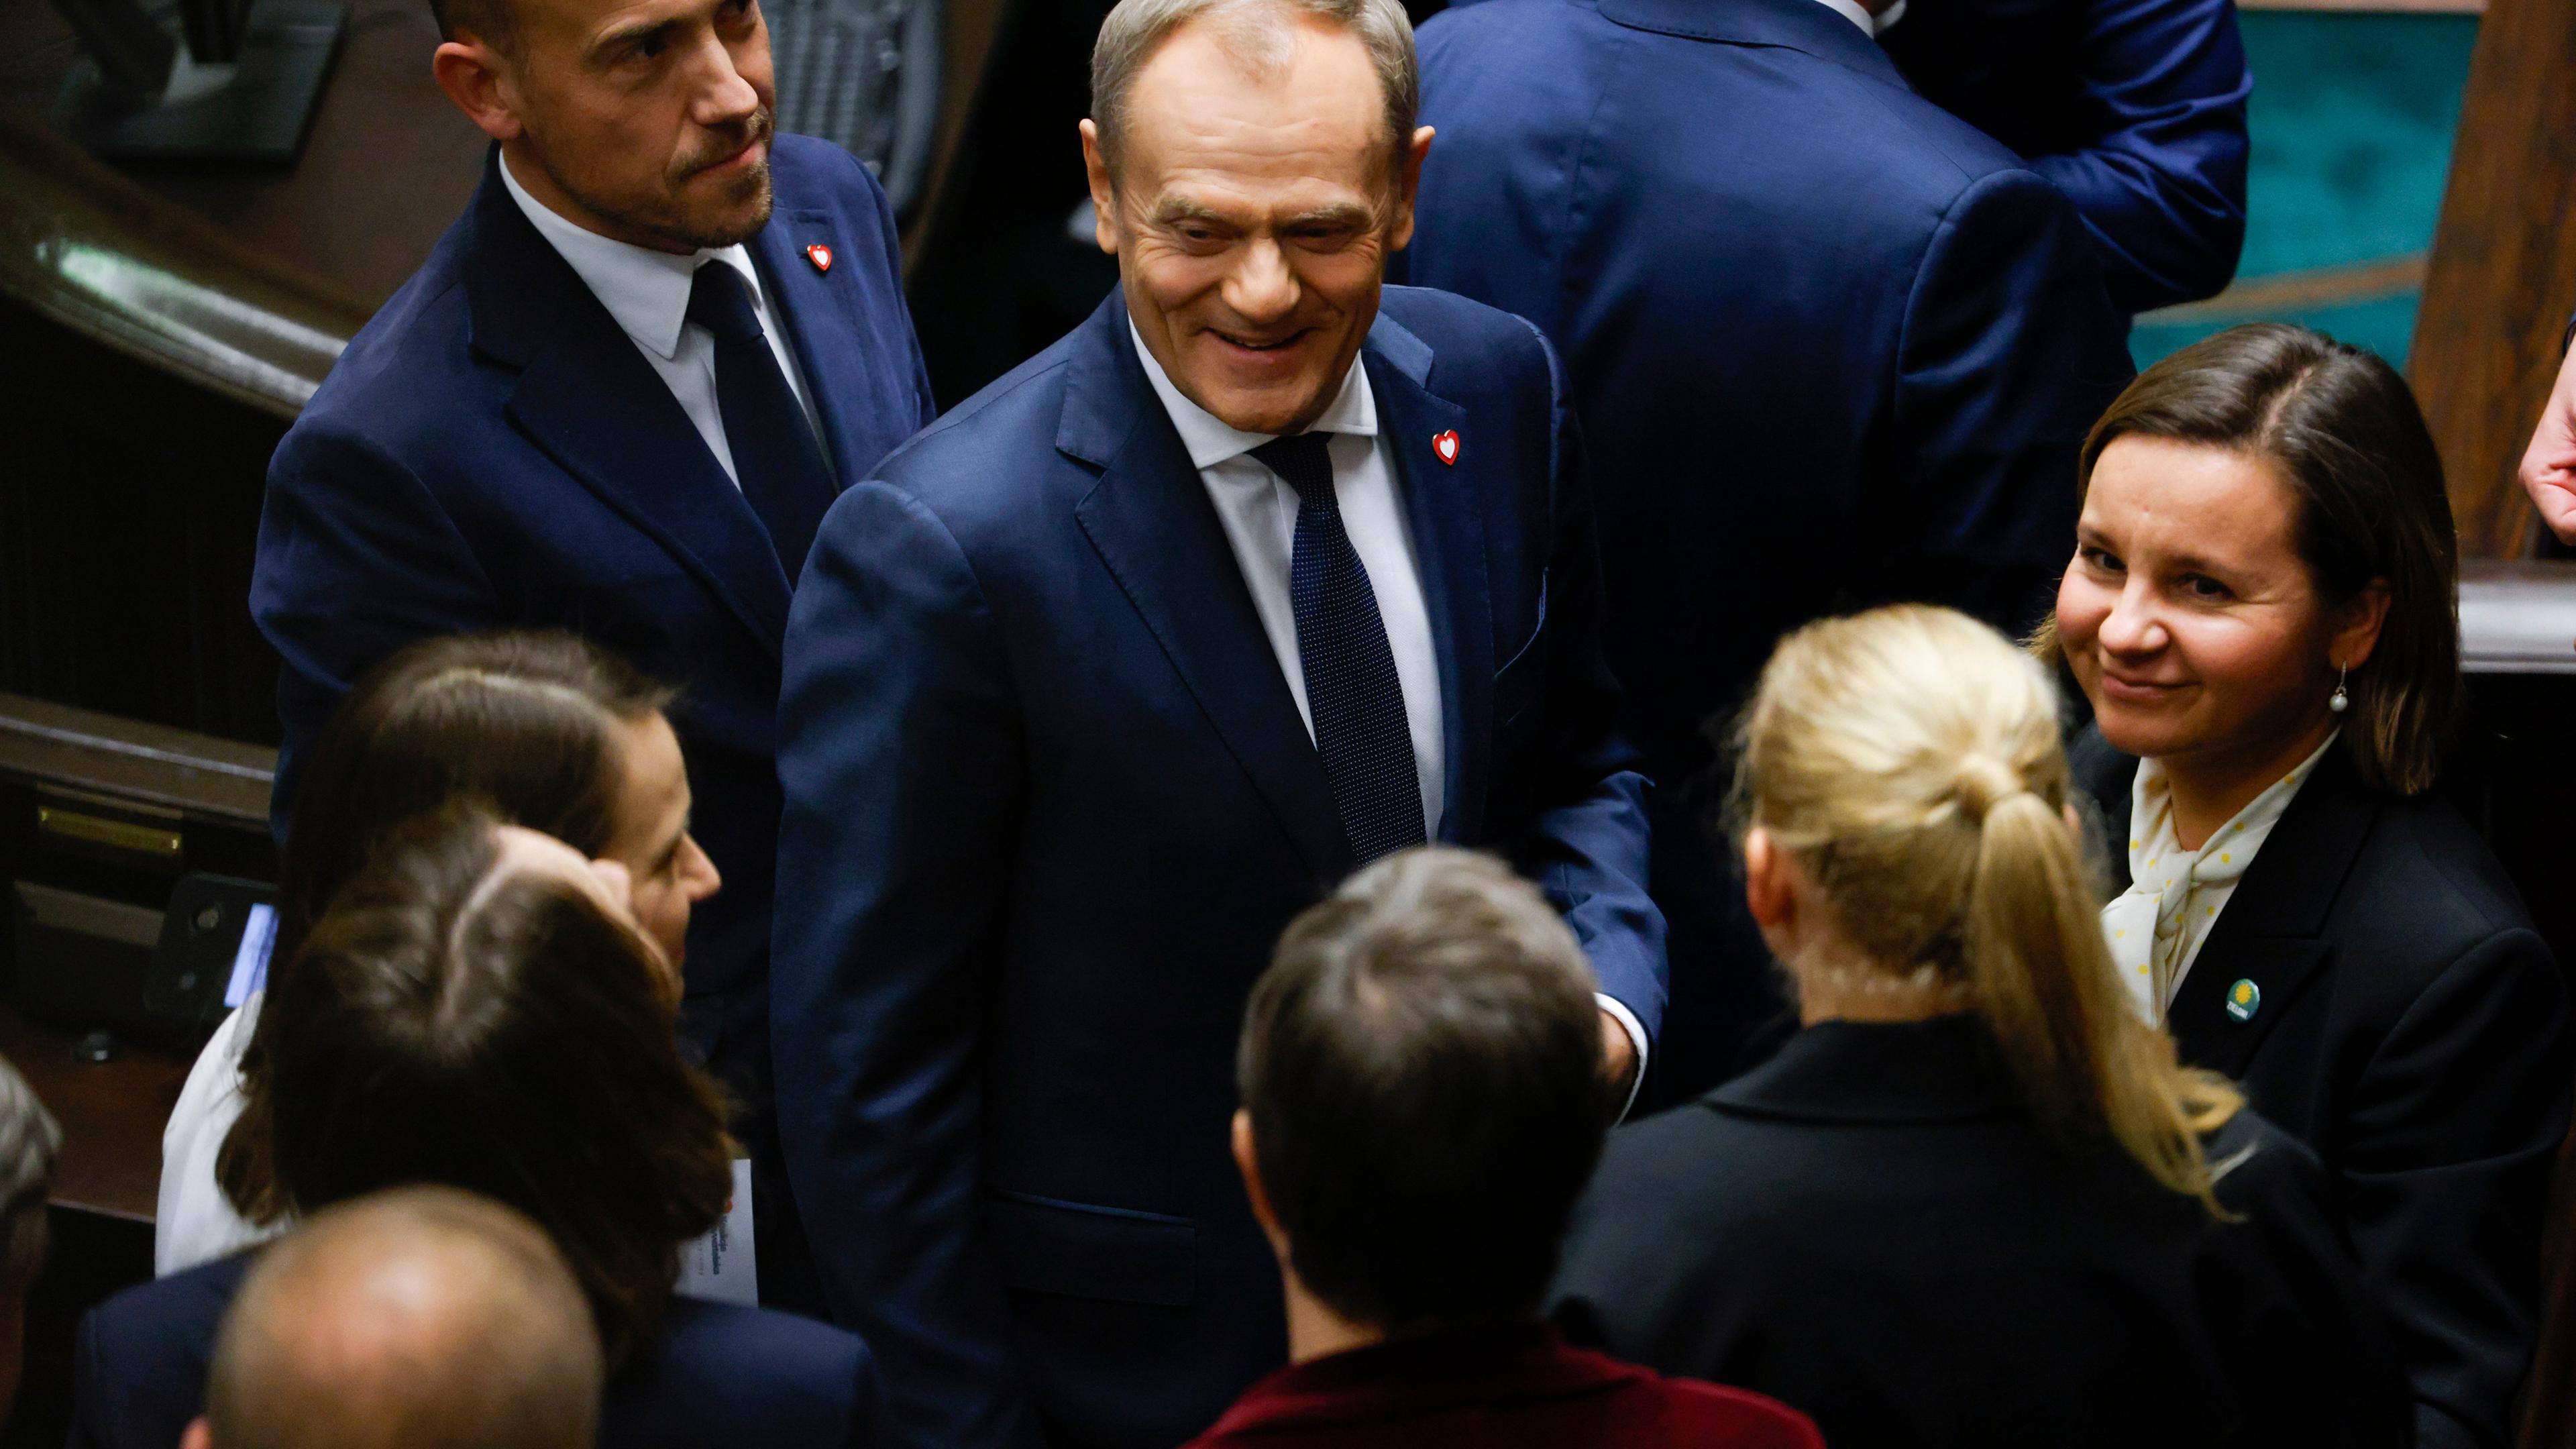 Polen, Warschau: Donald Tusk (M), Oppositionsführer, reagiert nach der Vertrauensabstimmung über die Regierung des polnischen Premierministers Morawiecki.